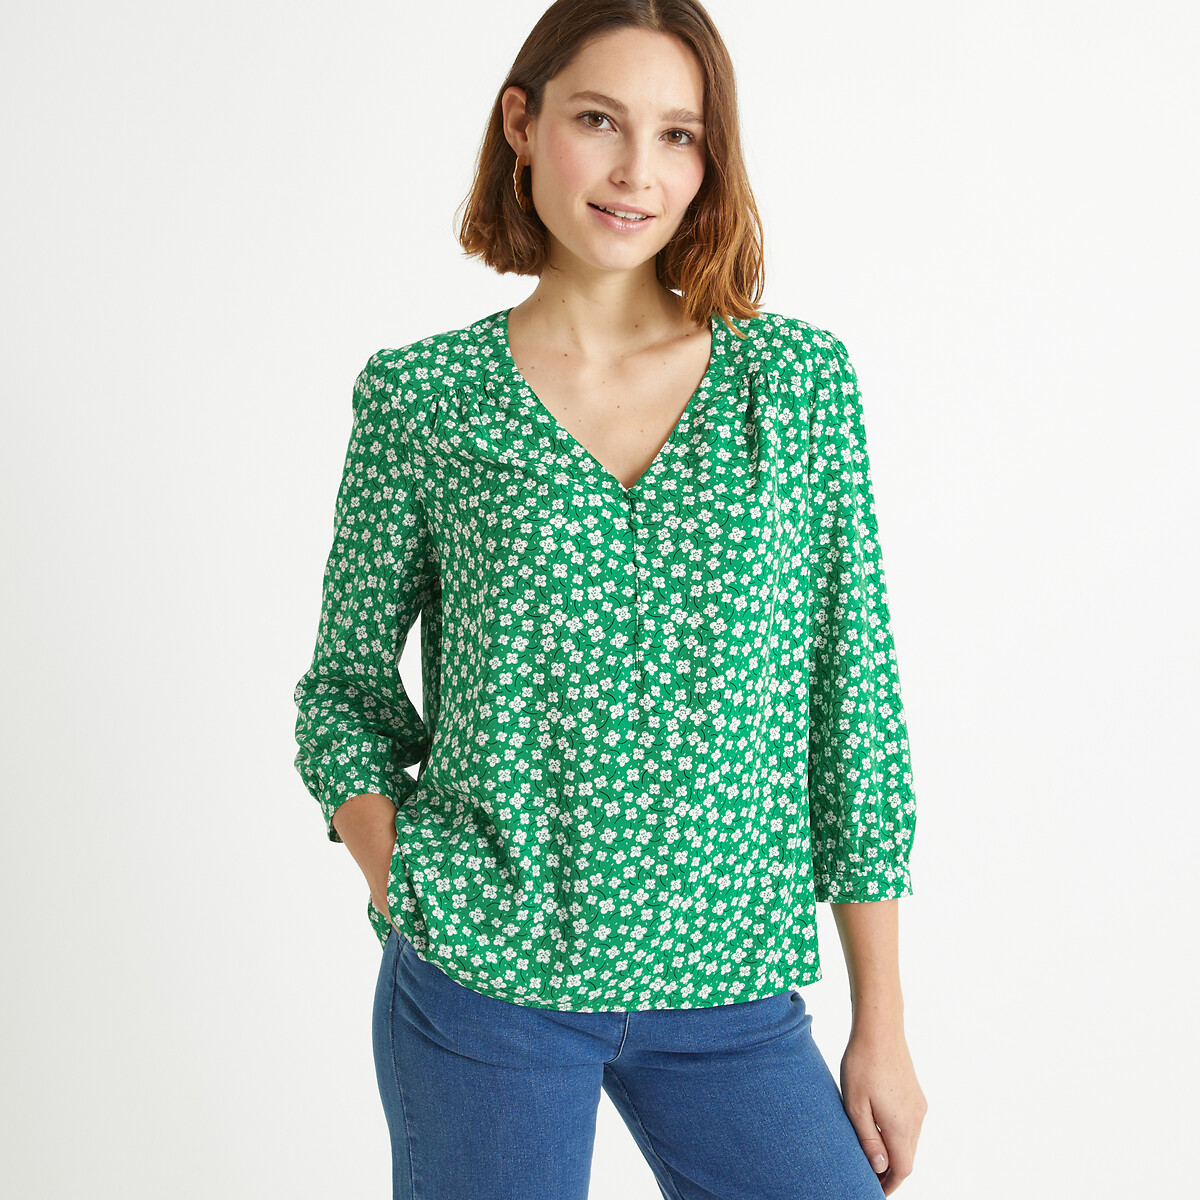 Блузка с V-образным вырезом цветочным принтом рукавами 34 44 (FR) - 50 (RUS) зеленый блузка с принтом и v образным вырезом 34 fr 40 rus черный